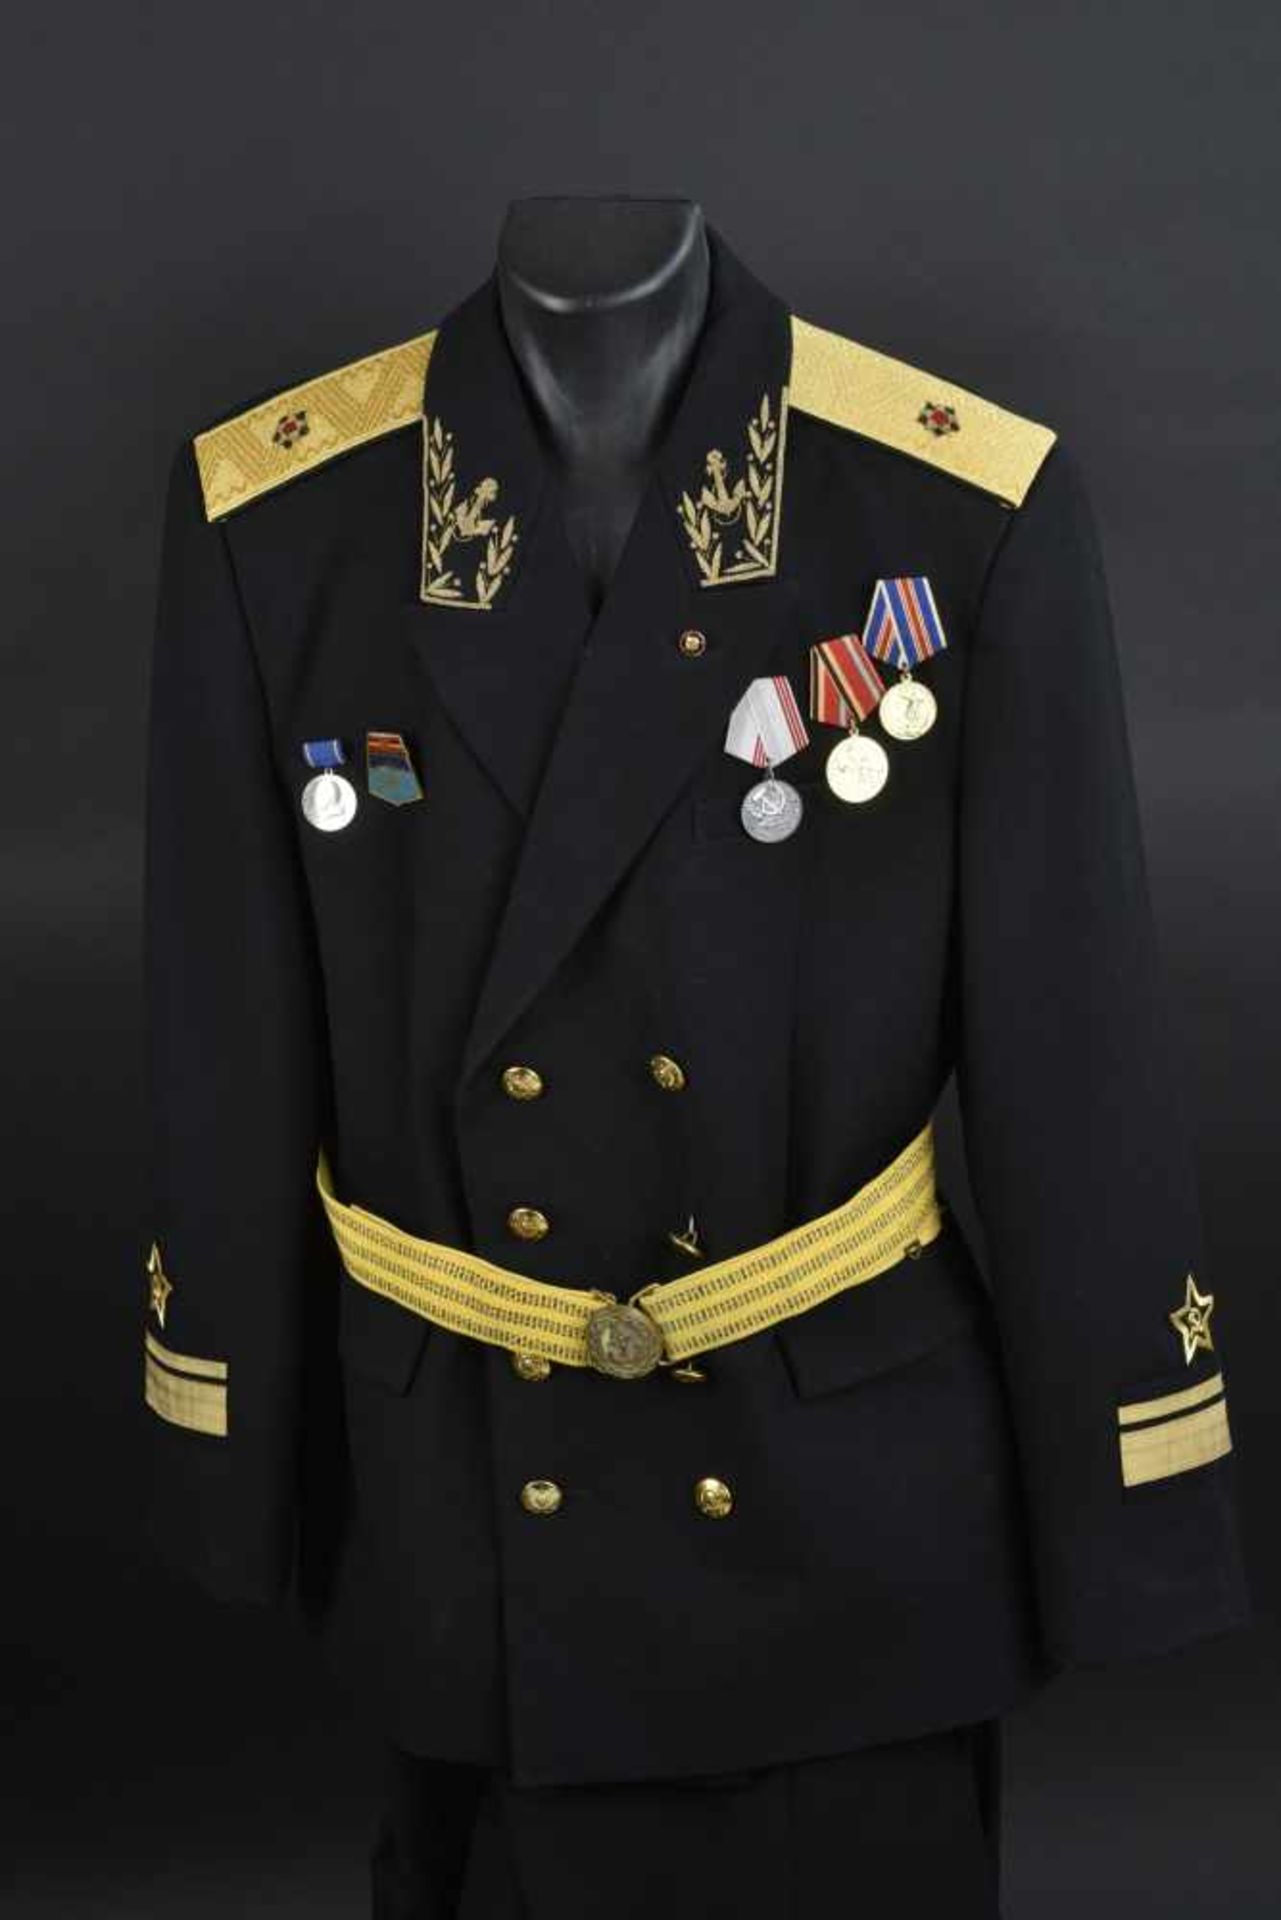 Uniforme de Contre amirale soviétique, année 1975 Vareuse en tissu noir, grades de col brodés en fil